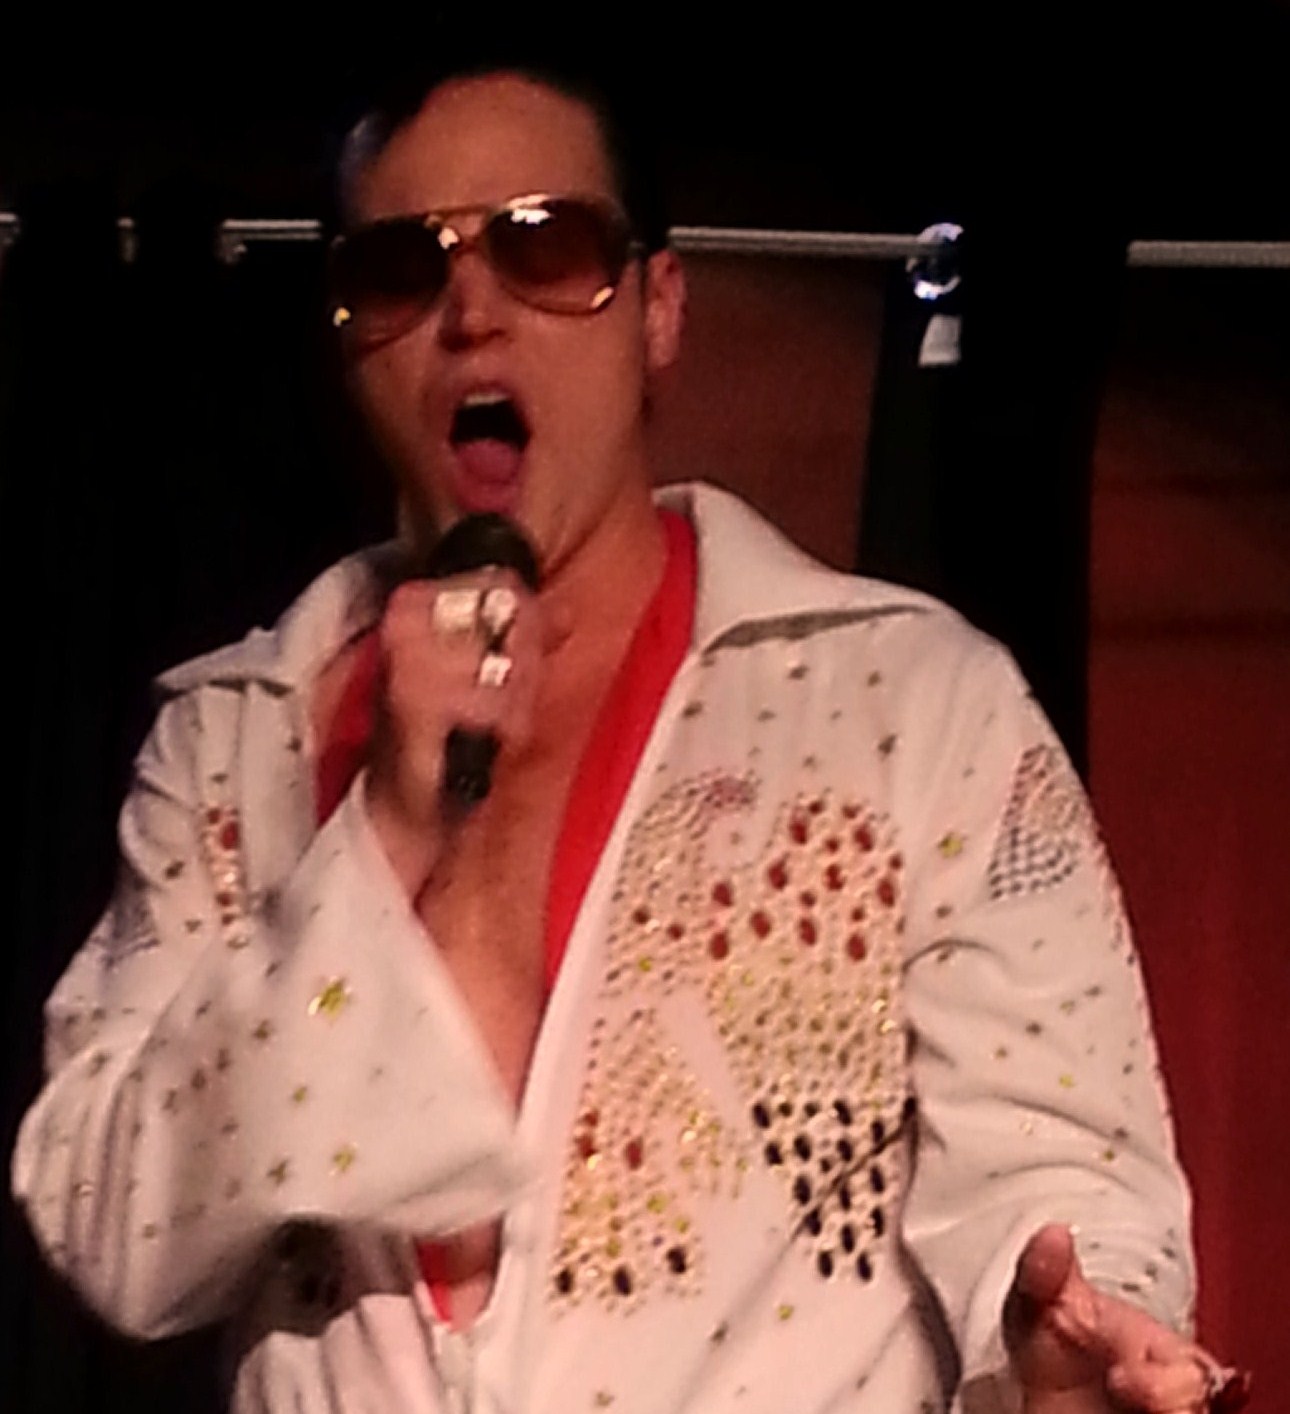 Keith Staley as Elvis Presley